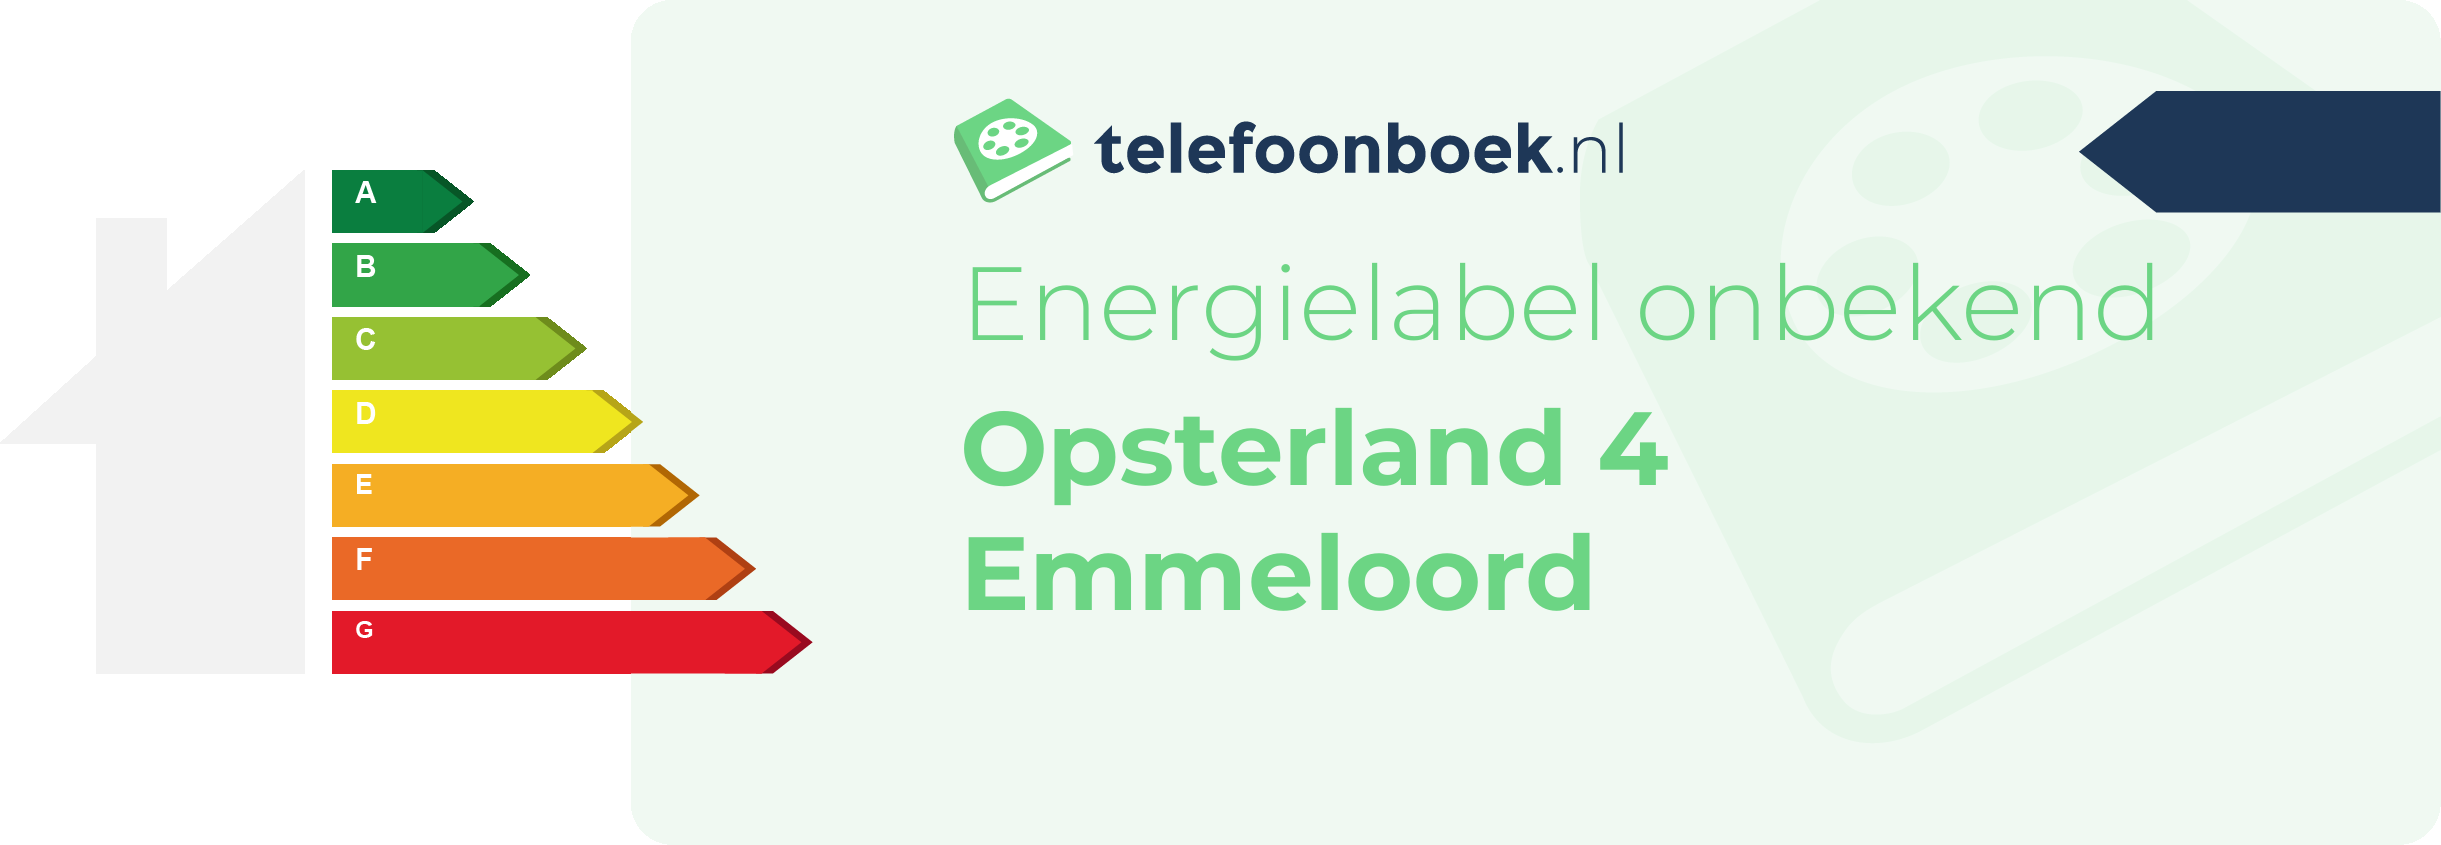 Energielabel Opsterland 4 Emmeloord